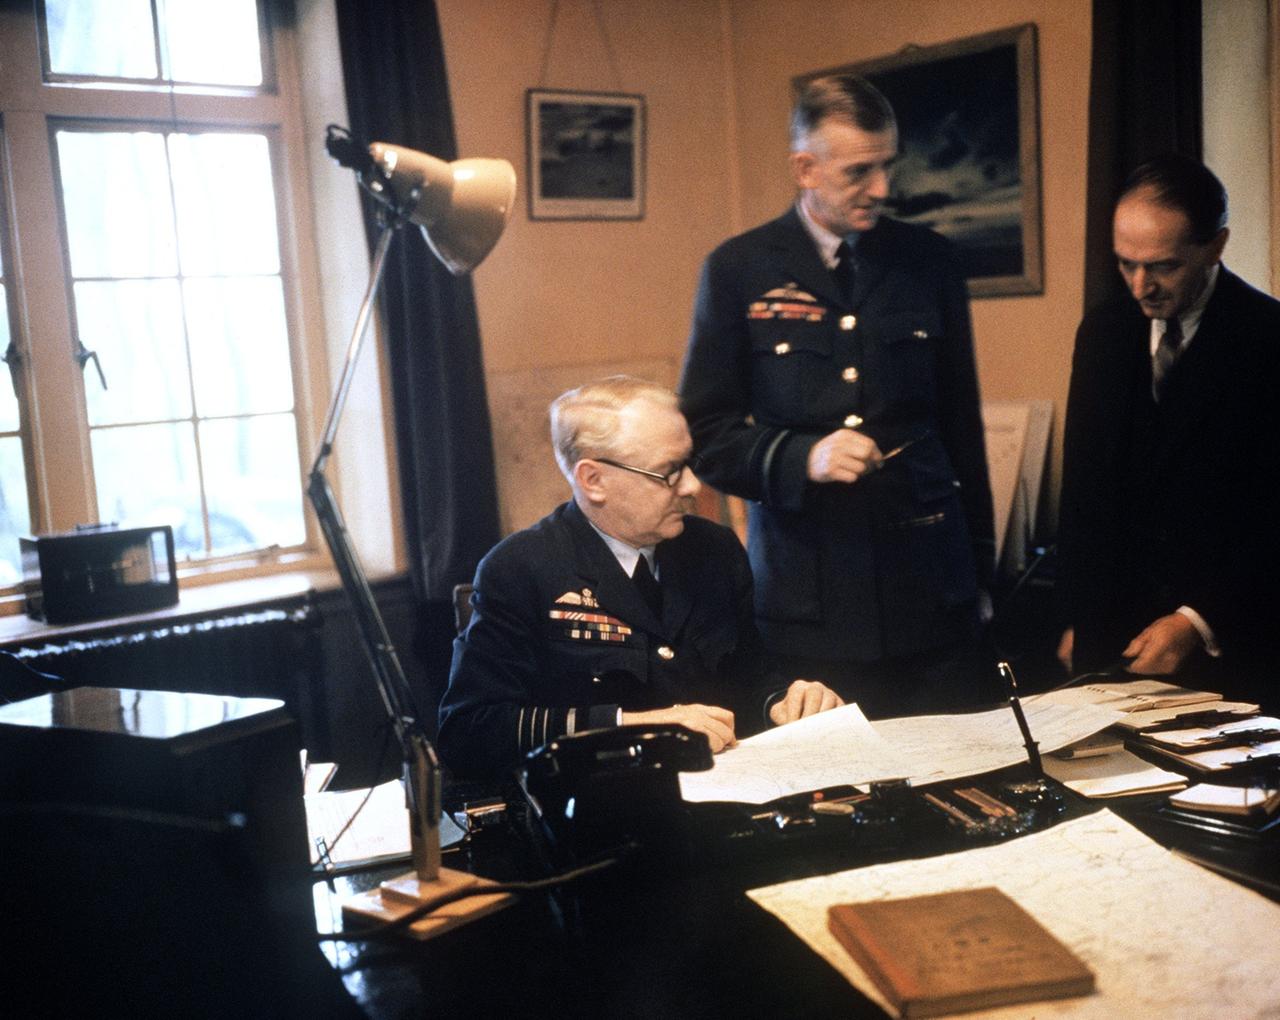 Der als "Bomber Harris" bekannt gewordene britische Luftwaffenoffizier Arthur Harris (links) in einer Besprechung (undatierte Aufnahme)